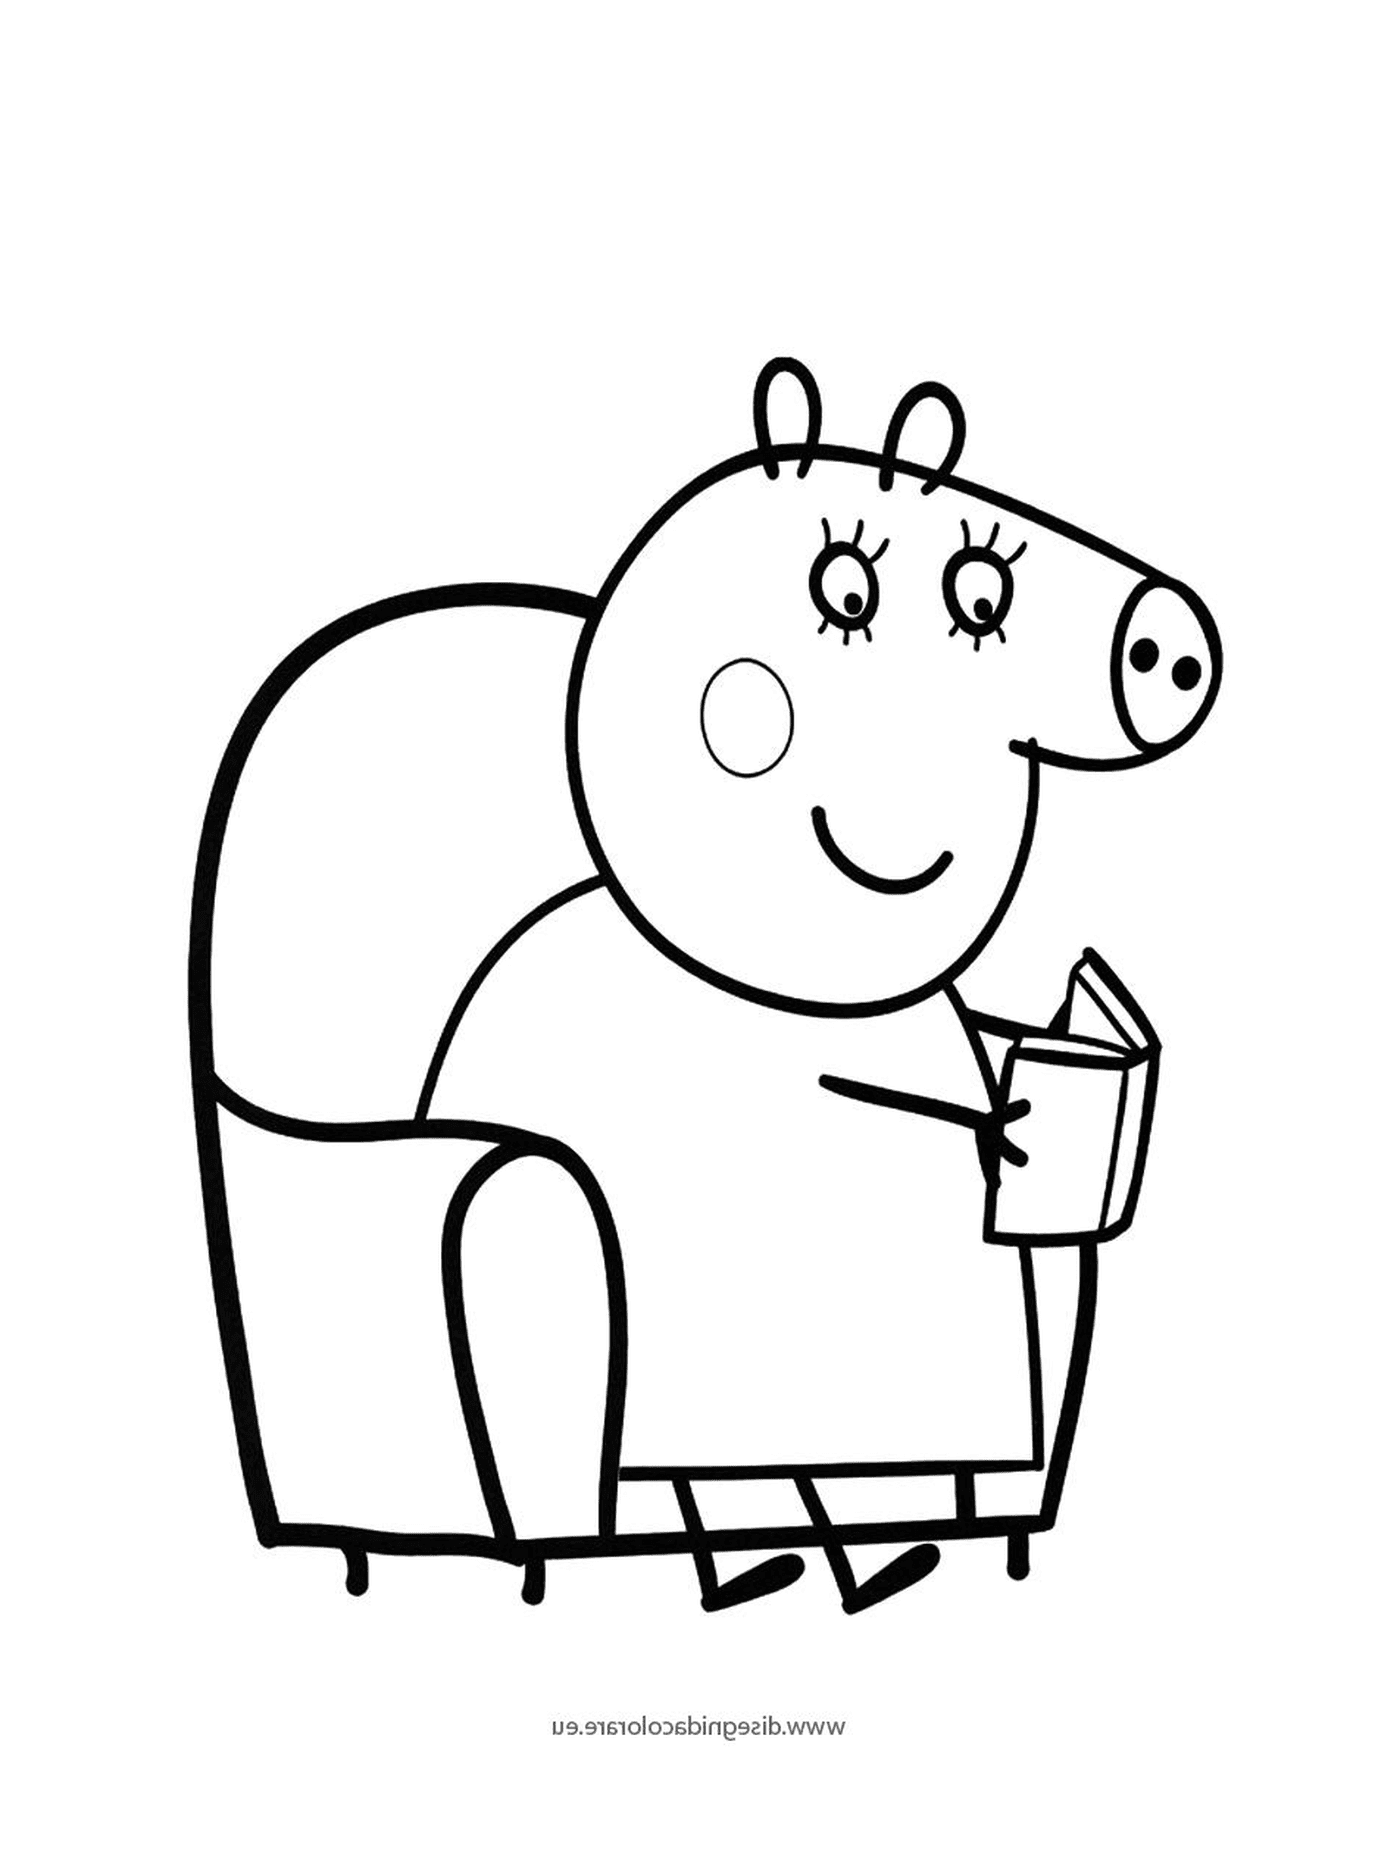  Un cerdo sentado en una silla sosteniendo un libro 